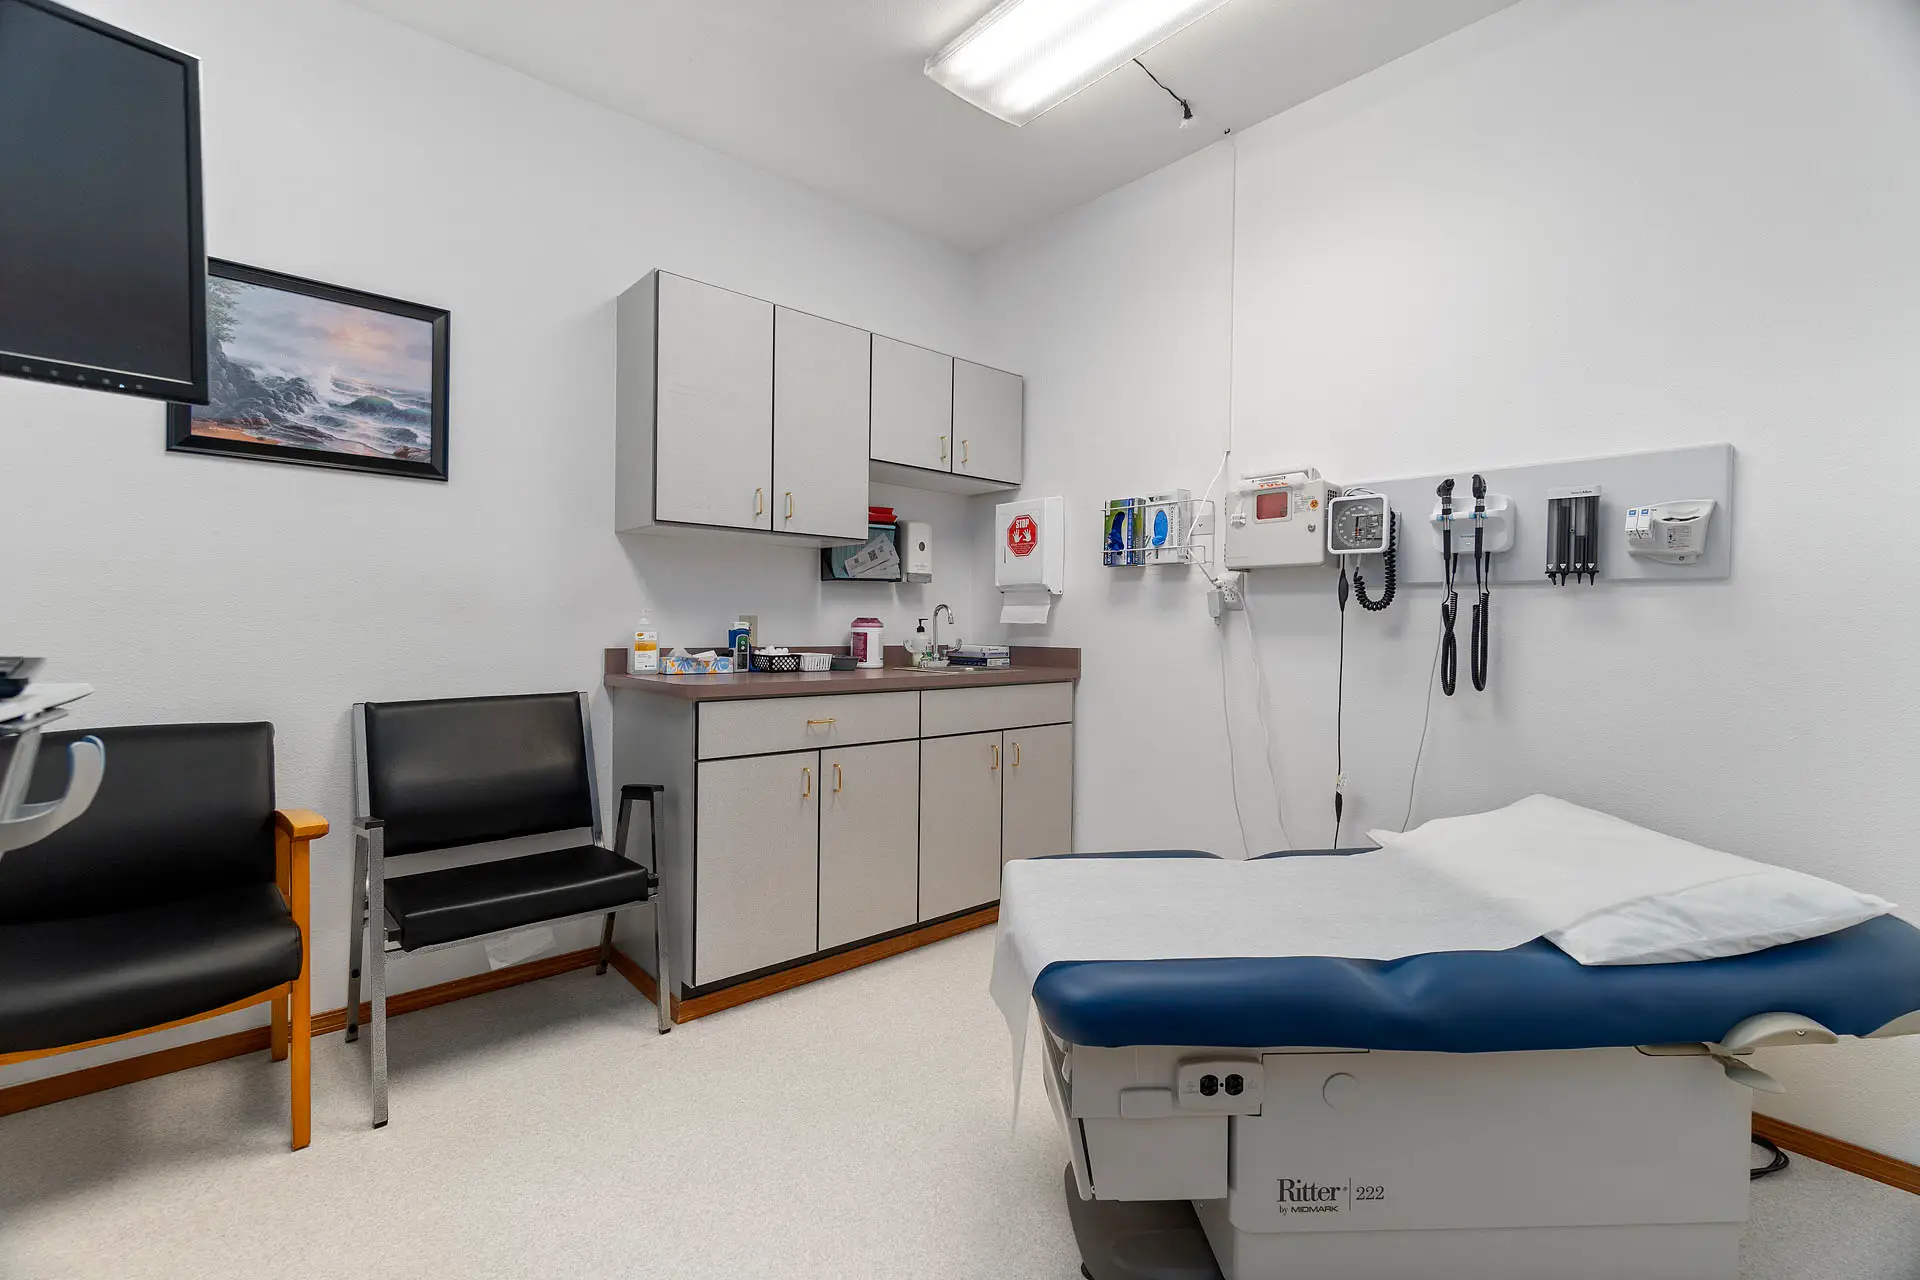 Winlock – Valley View Health Center